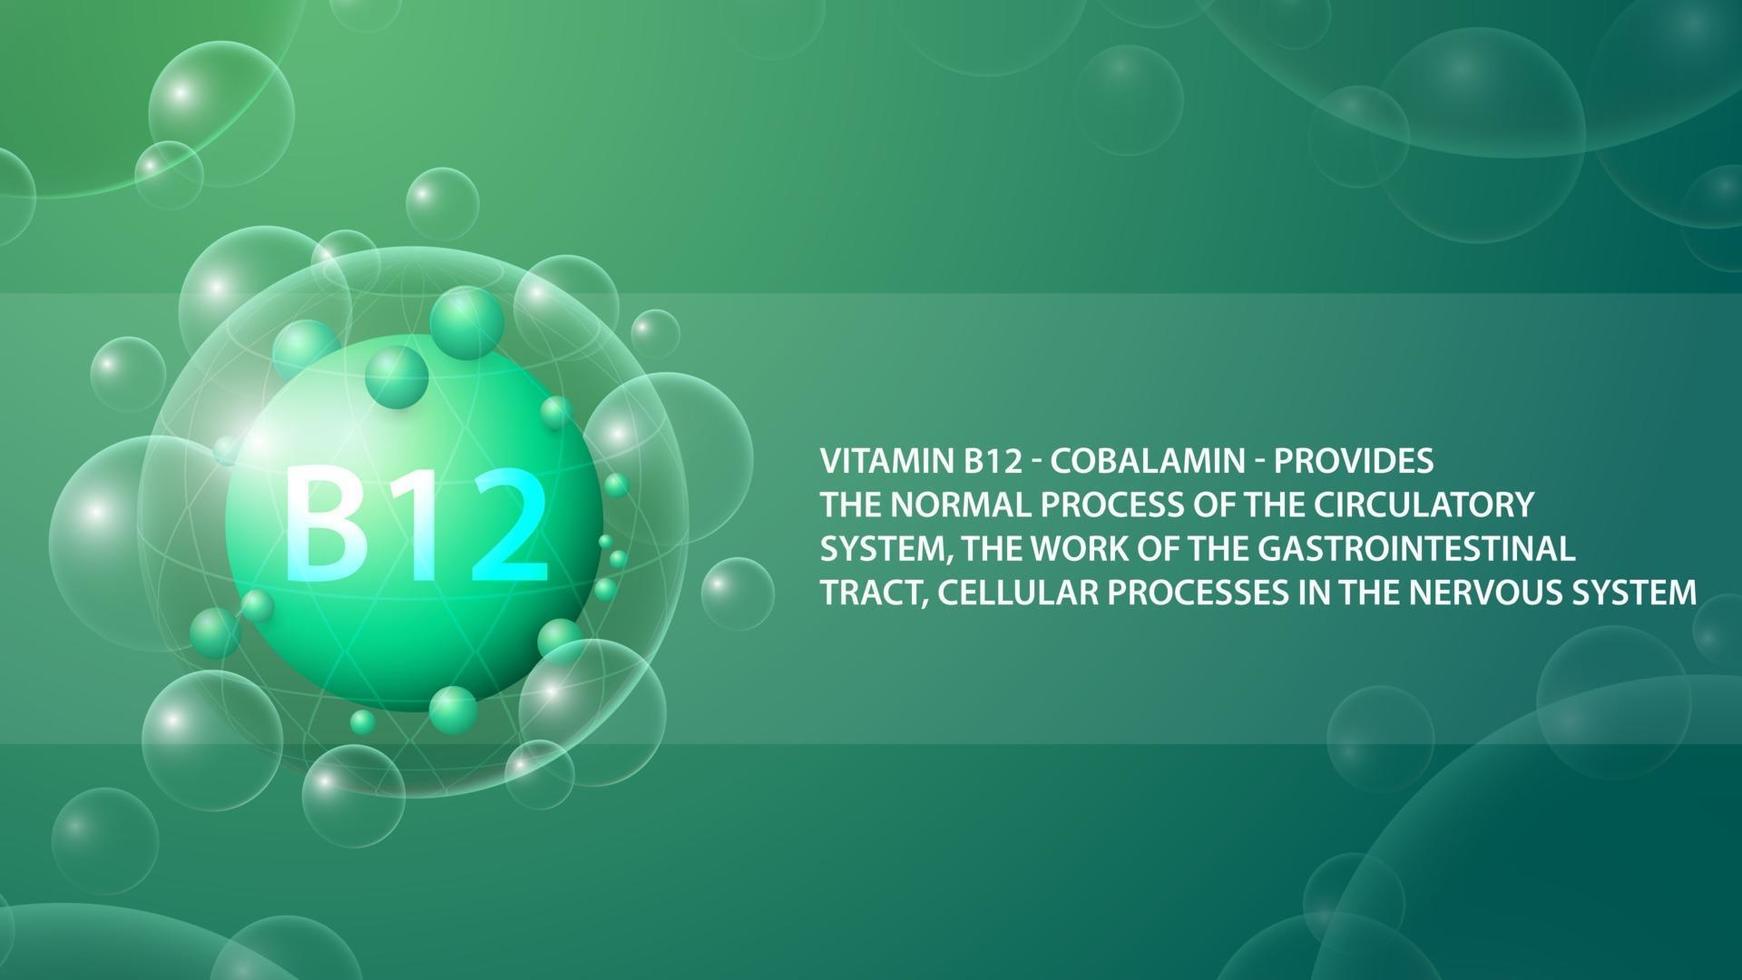 vitamine b12, affiche d'information verte avec capsule de médecine abstraite de vitamine b12 vecteur